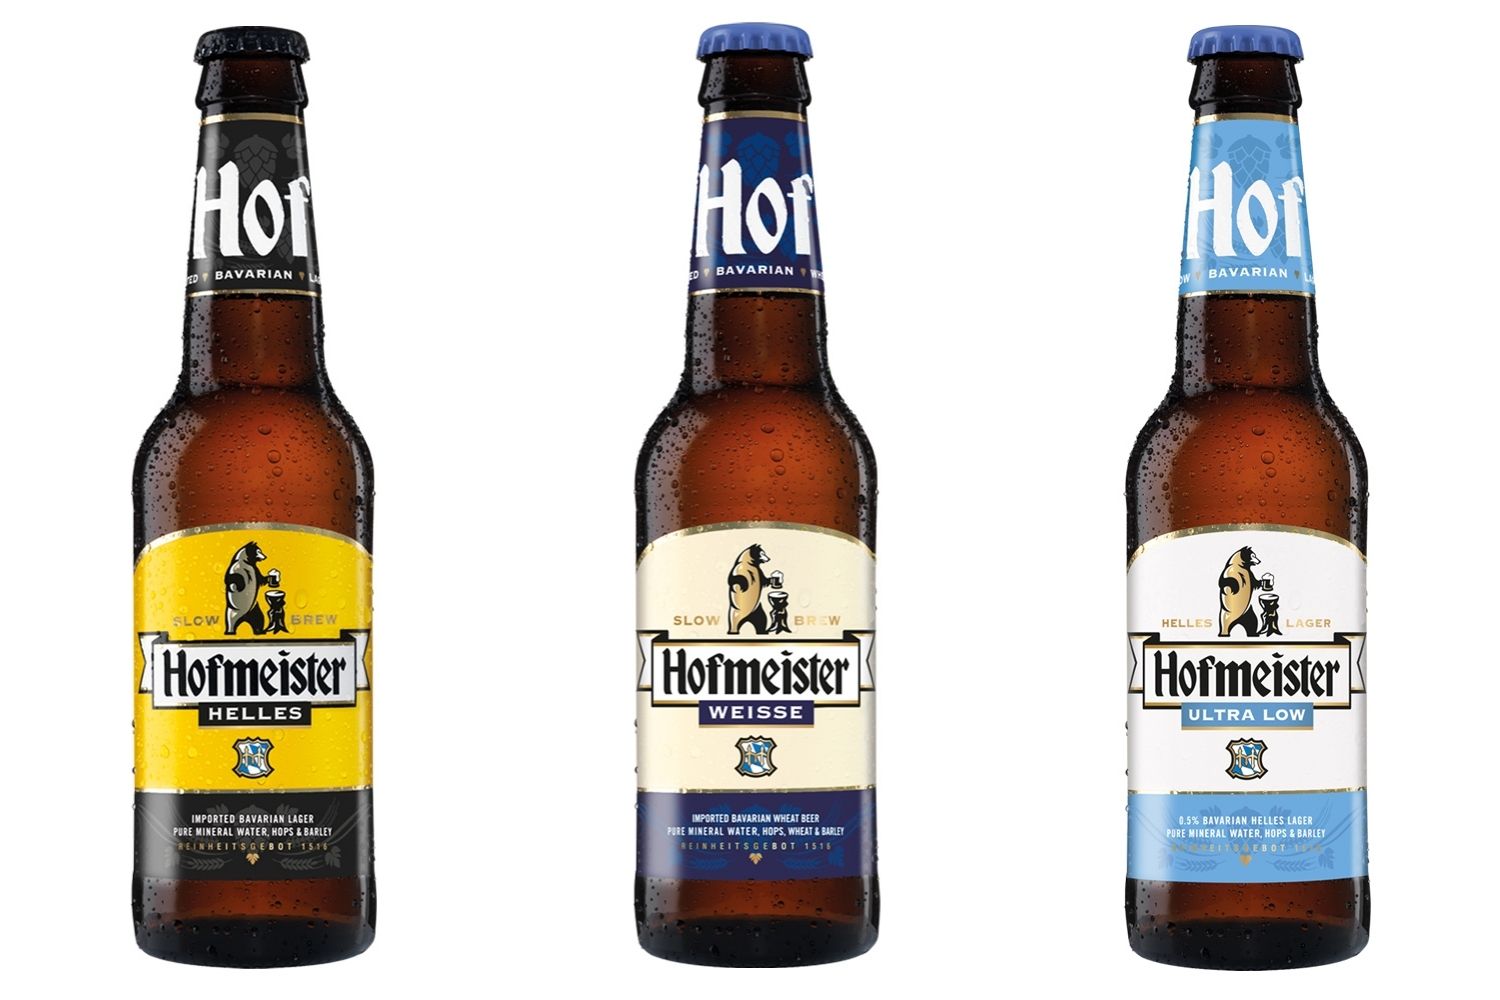 Hofmeister bottles